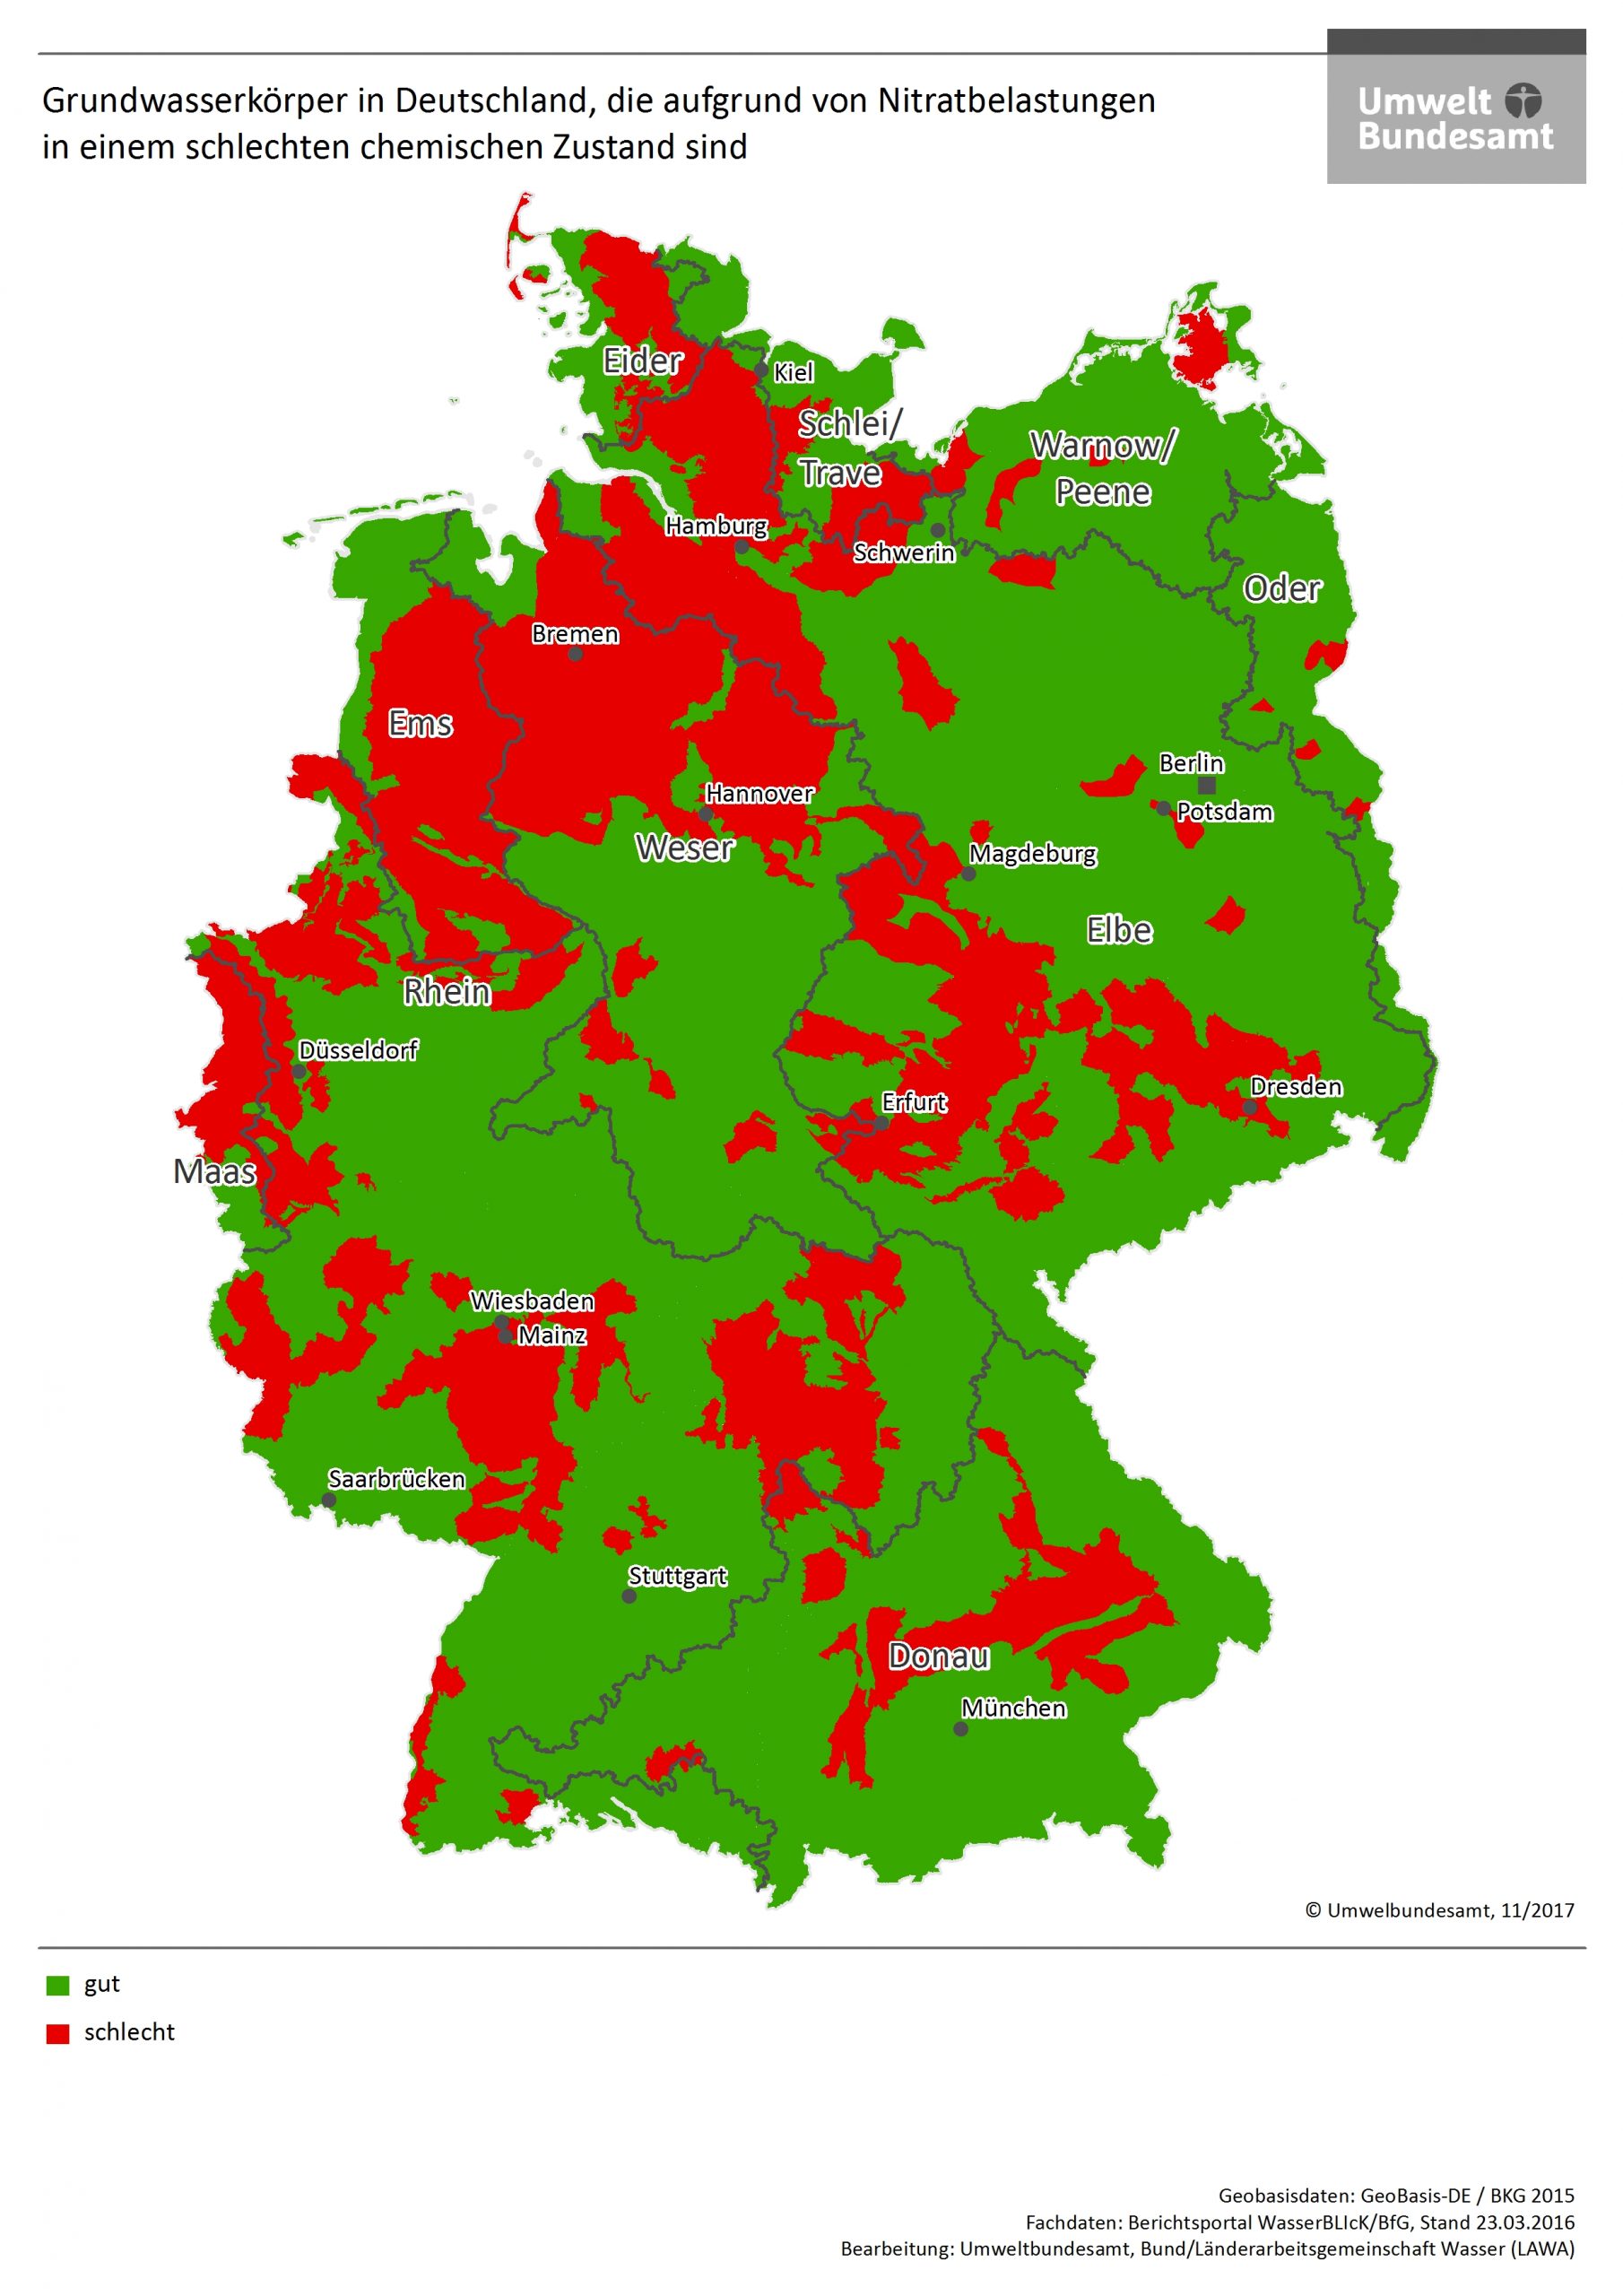 Nitratbelastung Grundwasser in Deutschland - Fraunhofer IESE